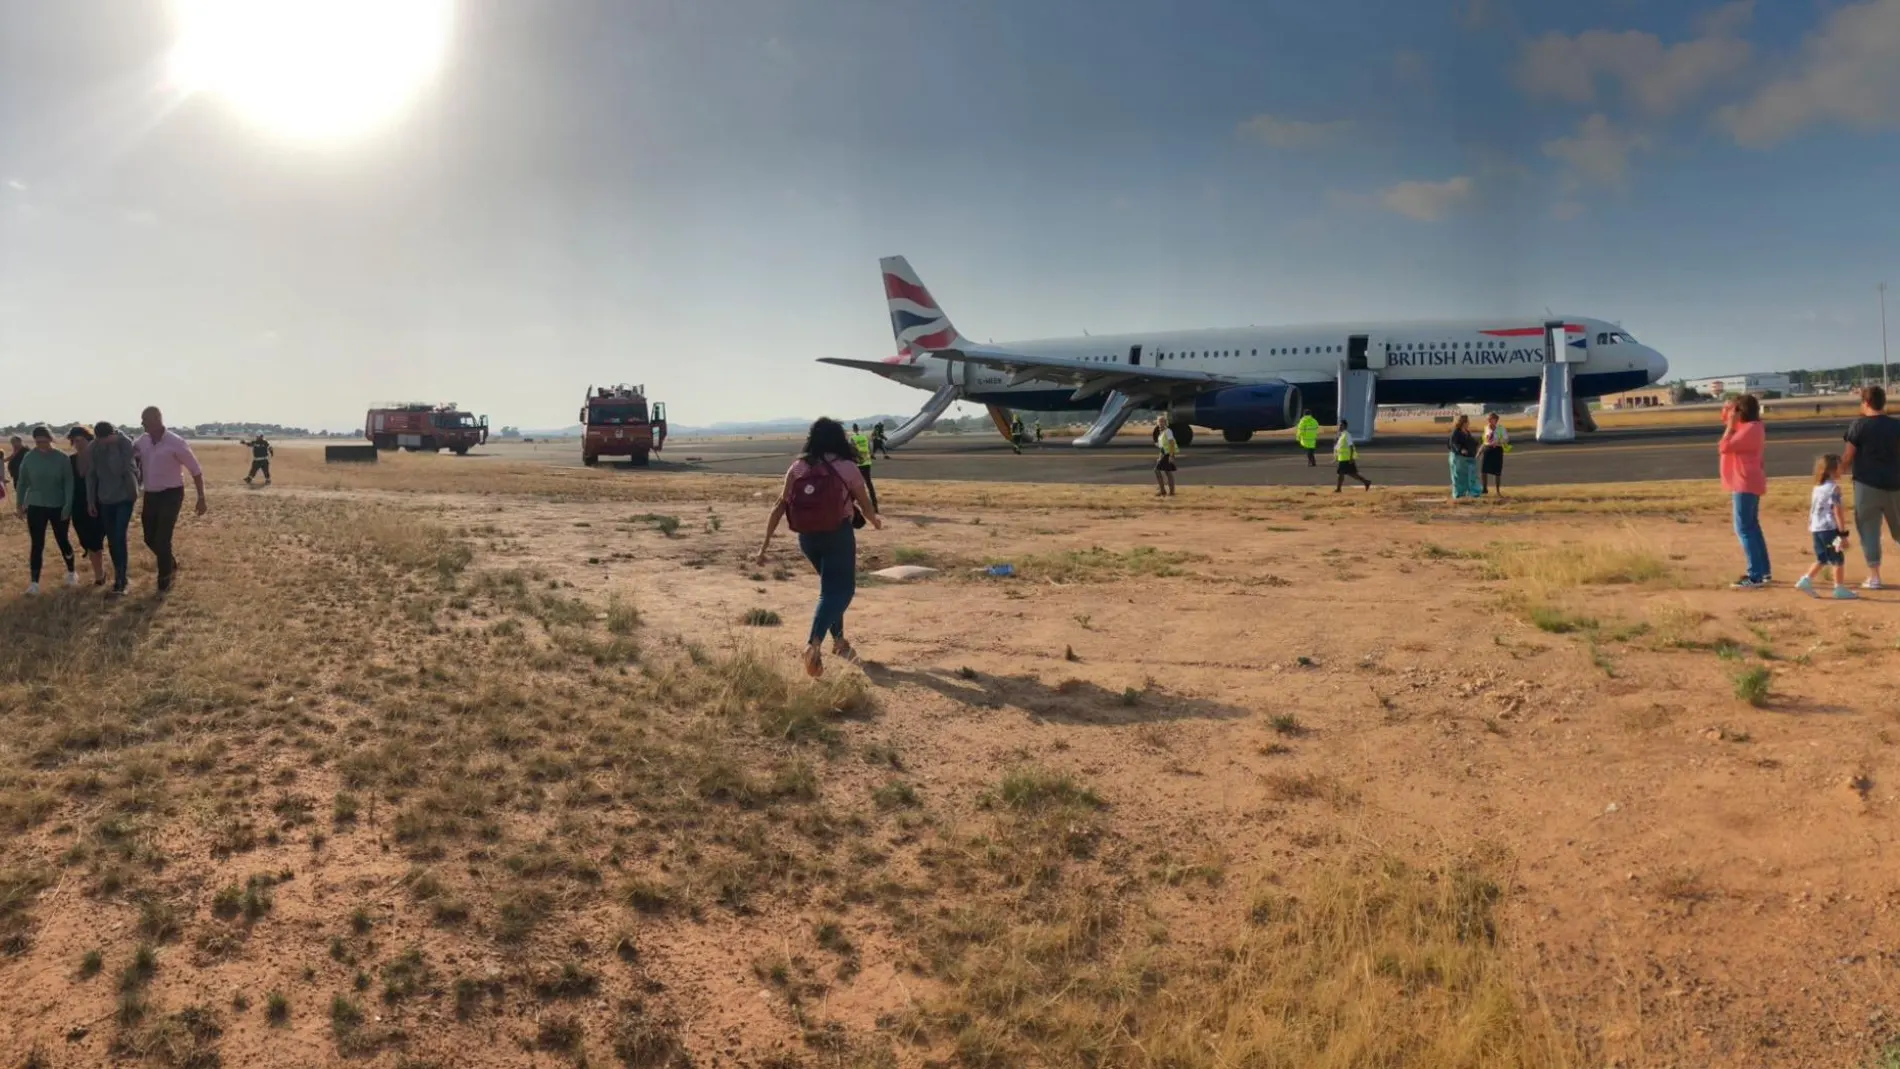 El incidente del vuelo Londres-Valencia aún no tiene explicación oficial